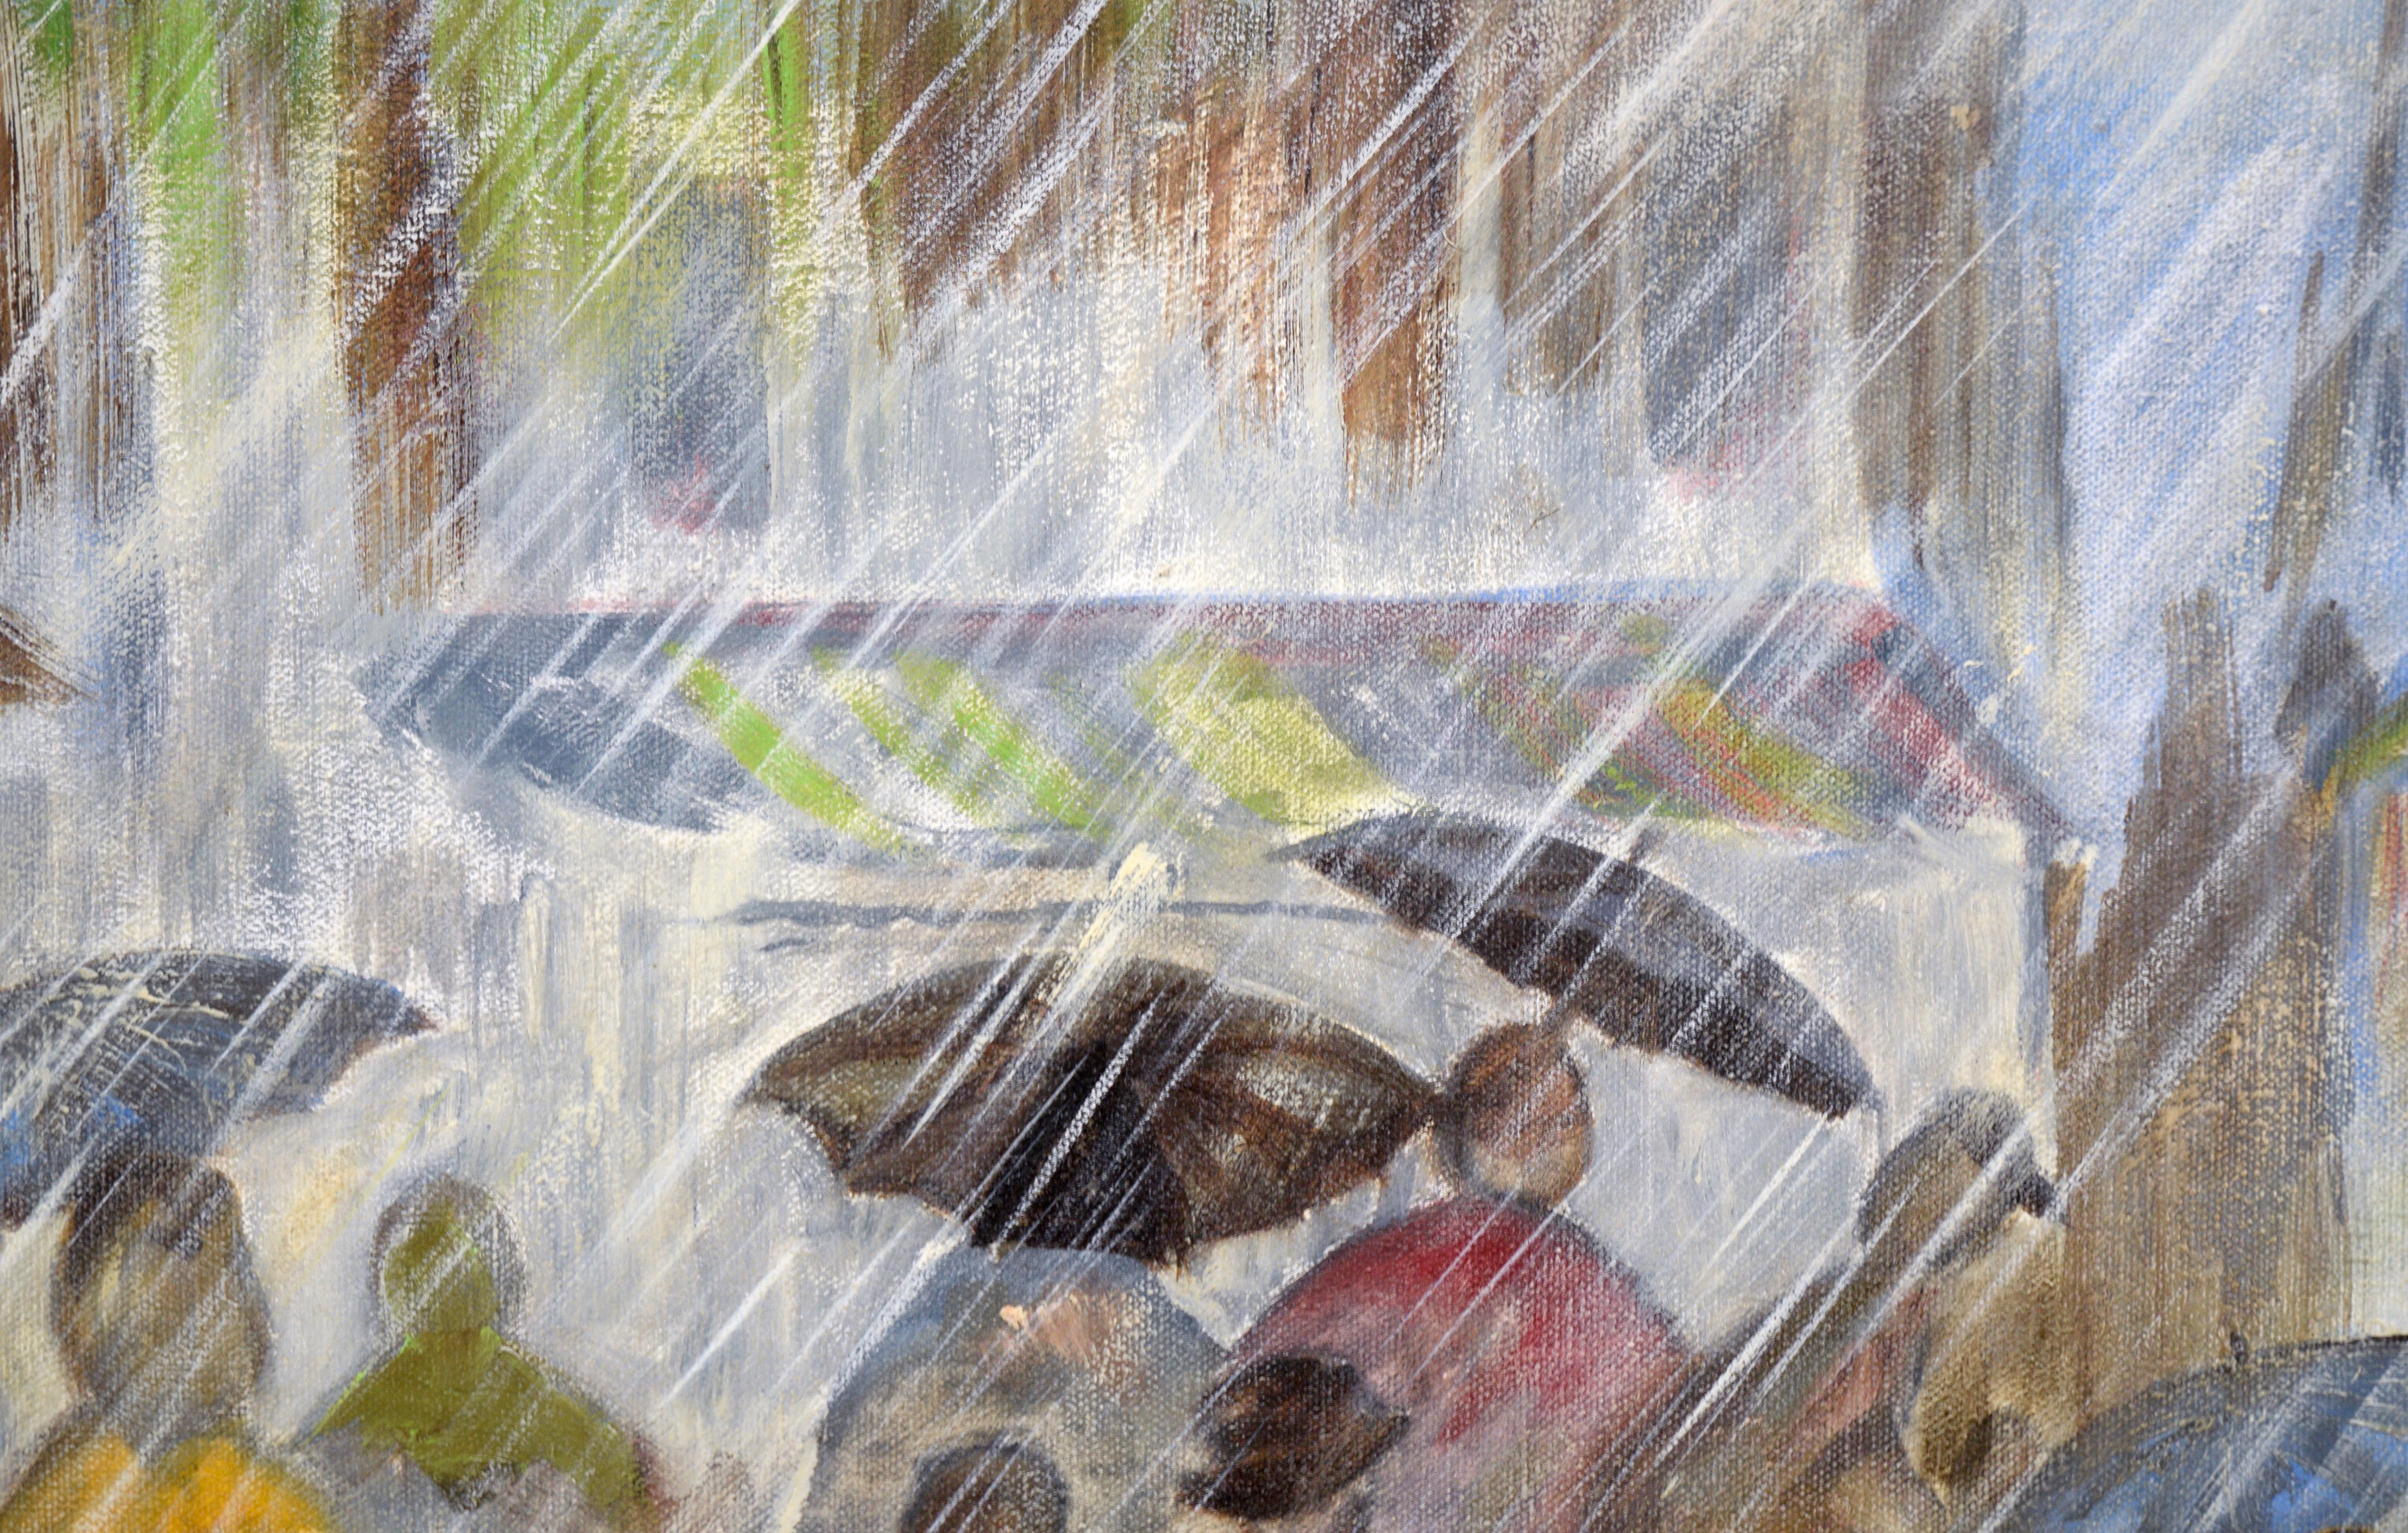 Paysage urbain dramatique d'une rue bondée sous la pluie par un artiste inconnu (20e siècle). Une foule de personnes navigue dans les rues sous la pluie, certaines tenant des parapluies. La pluie est représentée sous un angle oblique, indiquant une